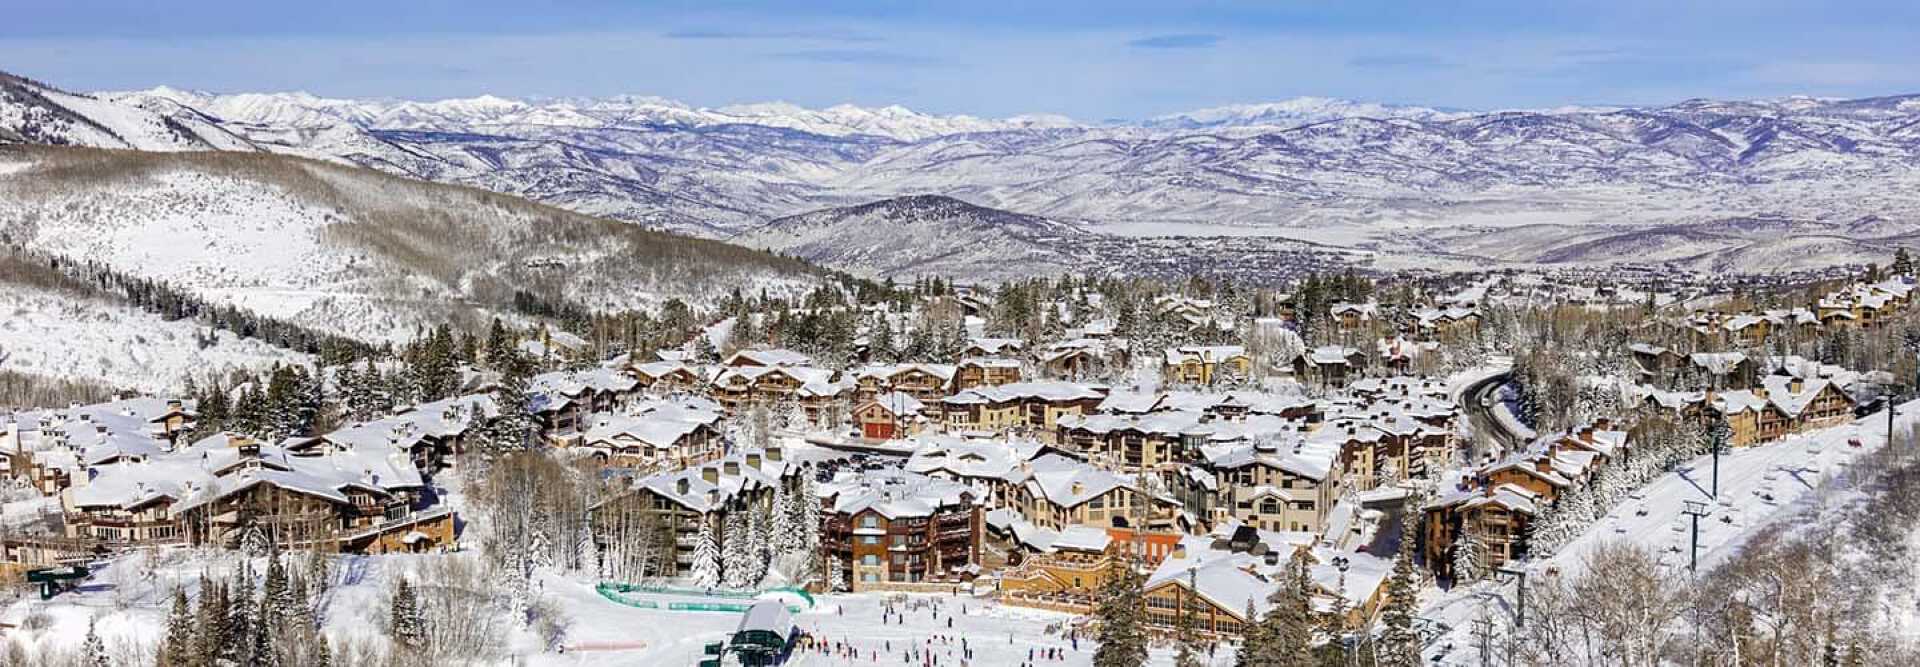 Vue aérienne de de la station de ski enneigée de Deer Valley à Utah aux États-unis